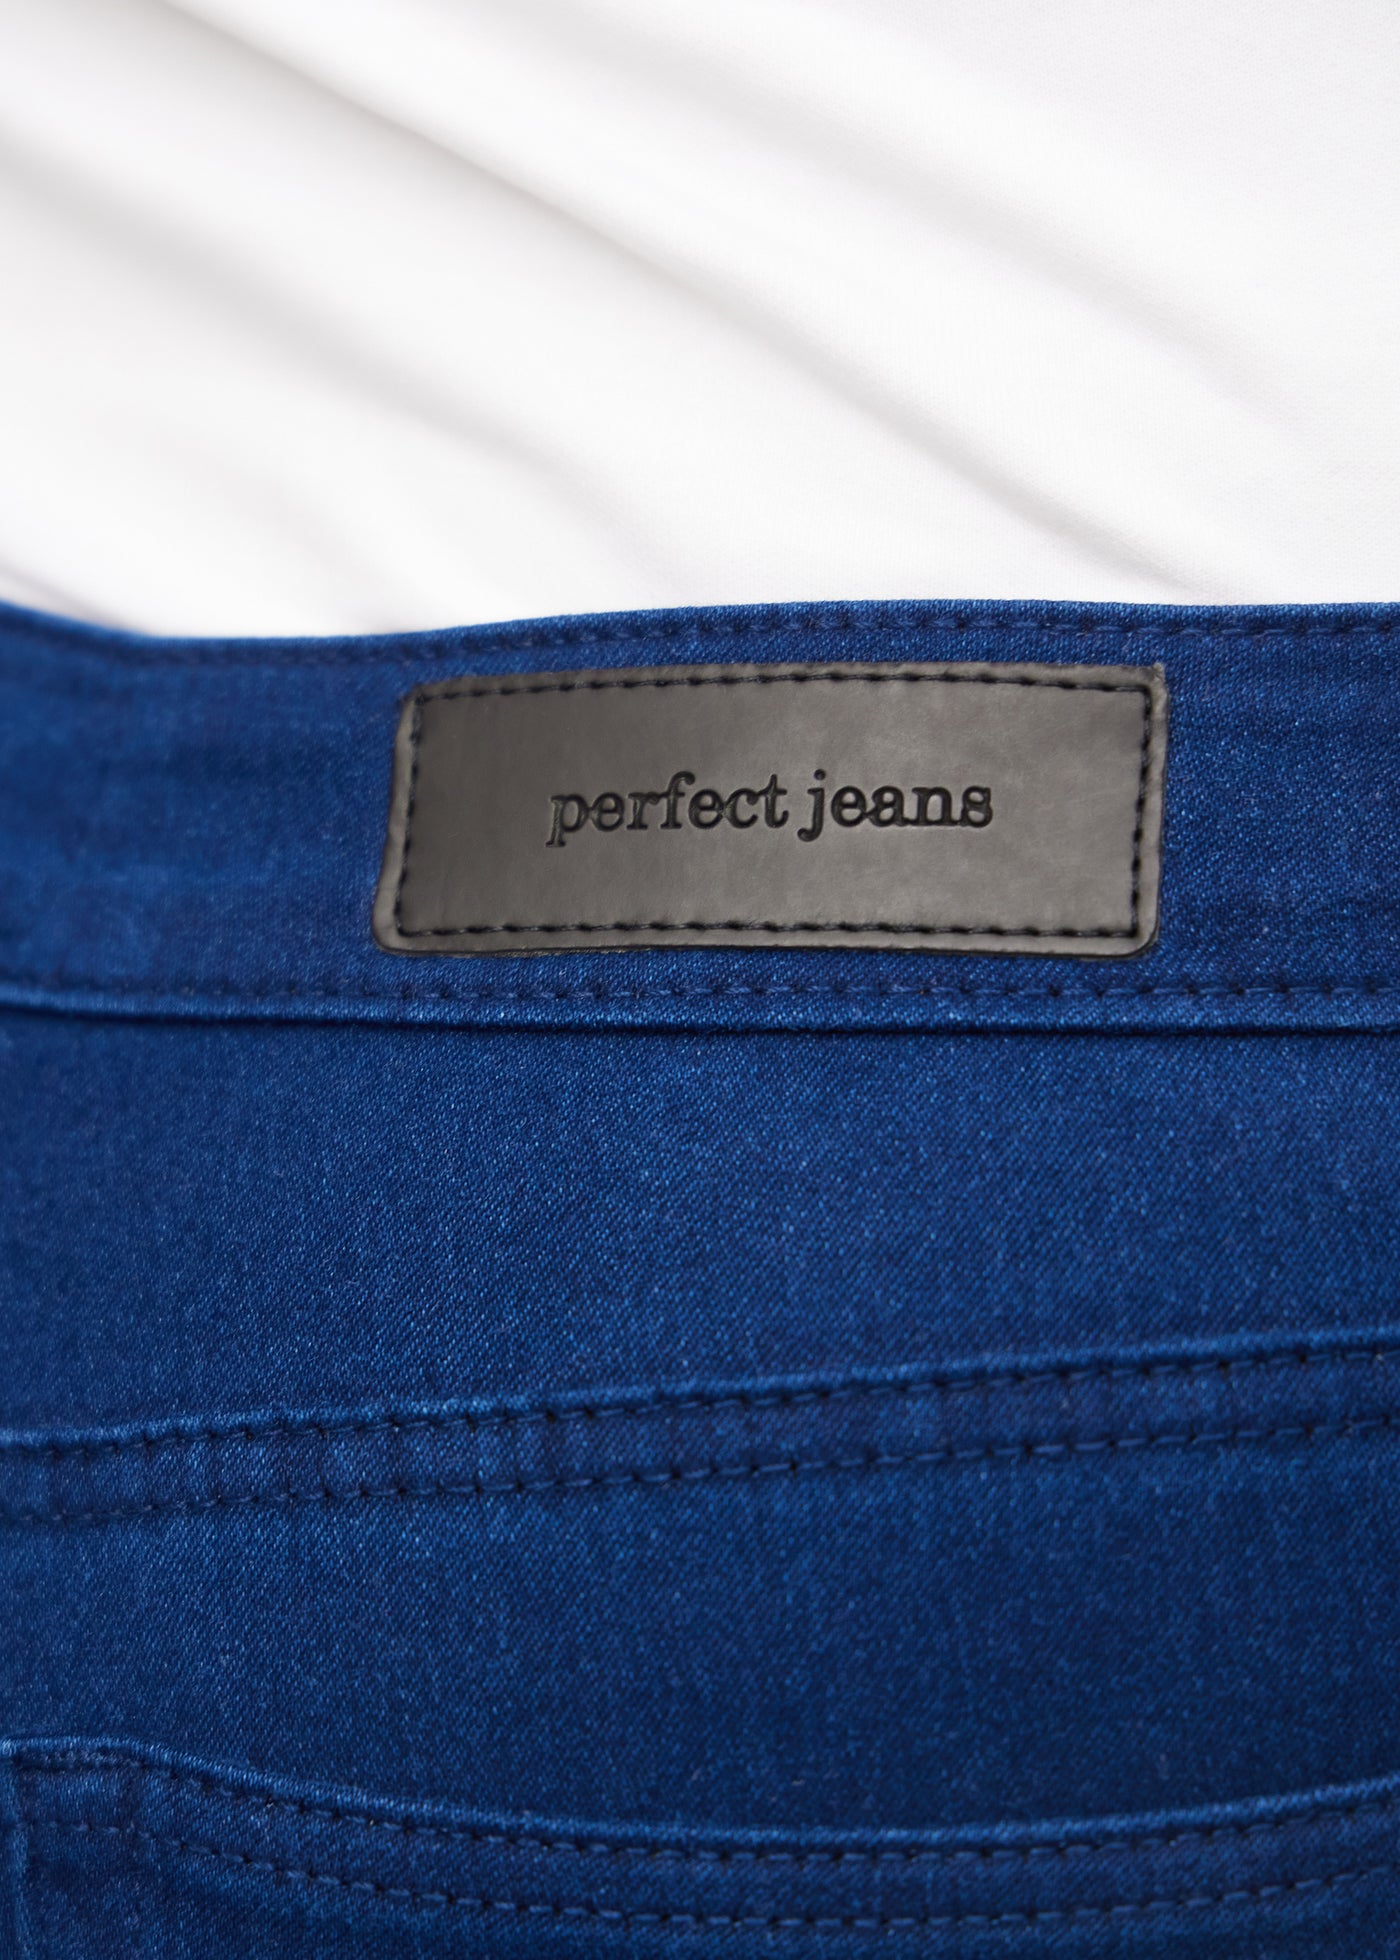 Baglommen på et par mørkeblå jeans, hvor man kan se logoet på en plus-size model.